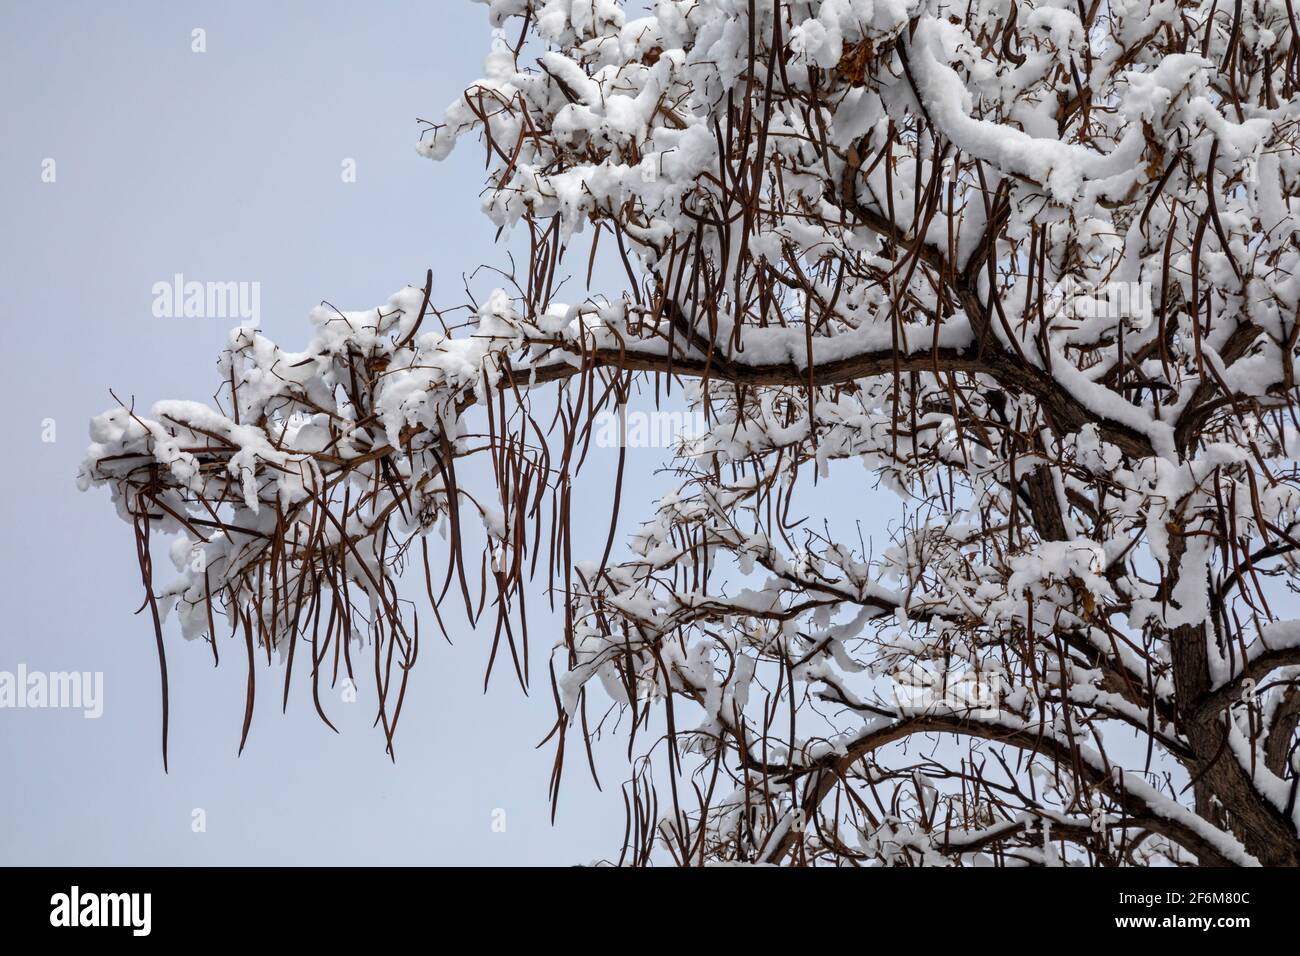 Wheat Ridge, Colorado - las vainas de frijol largo en un árbol catalpa después de una Nevada invernal. Foto de stock